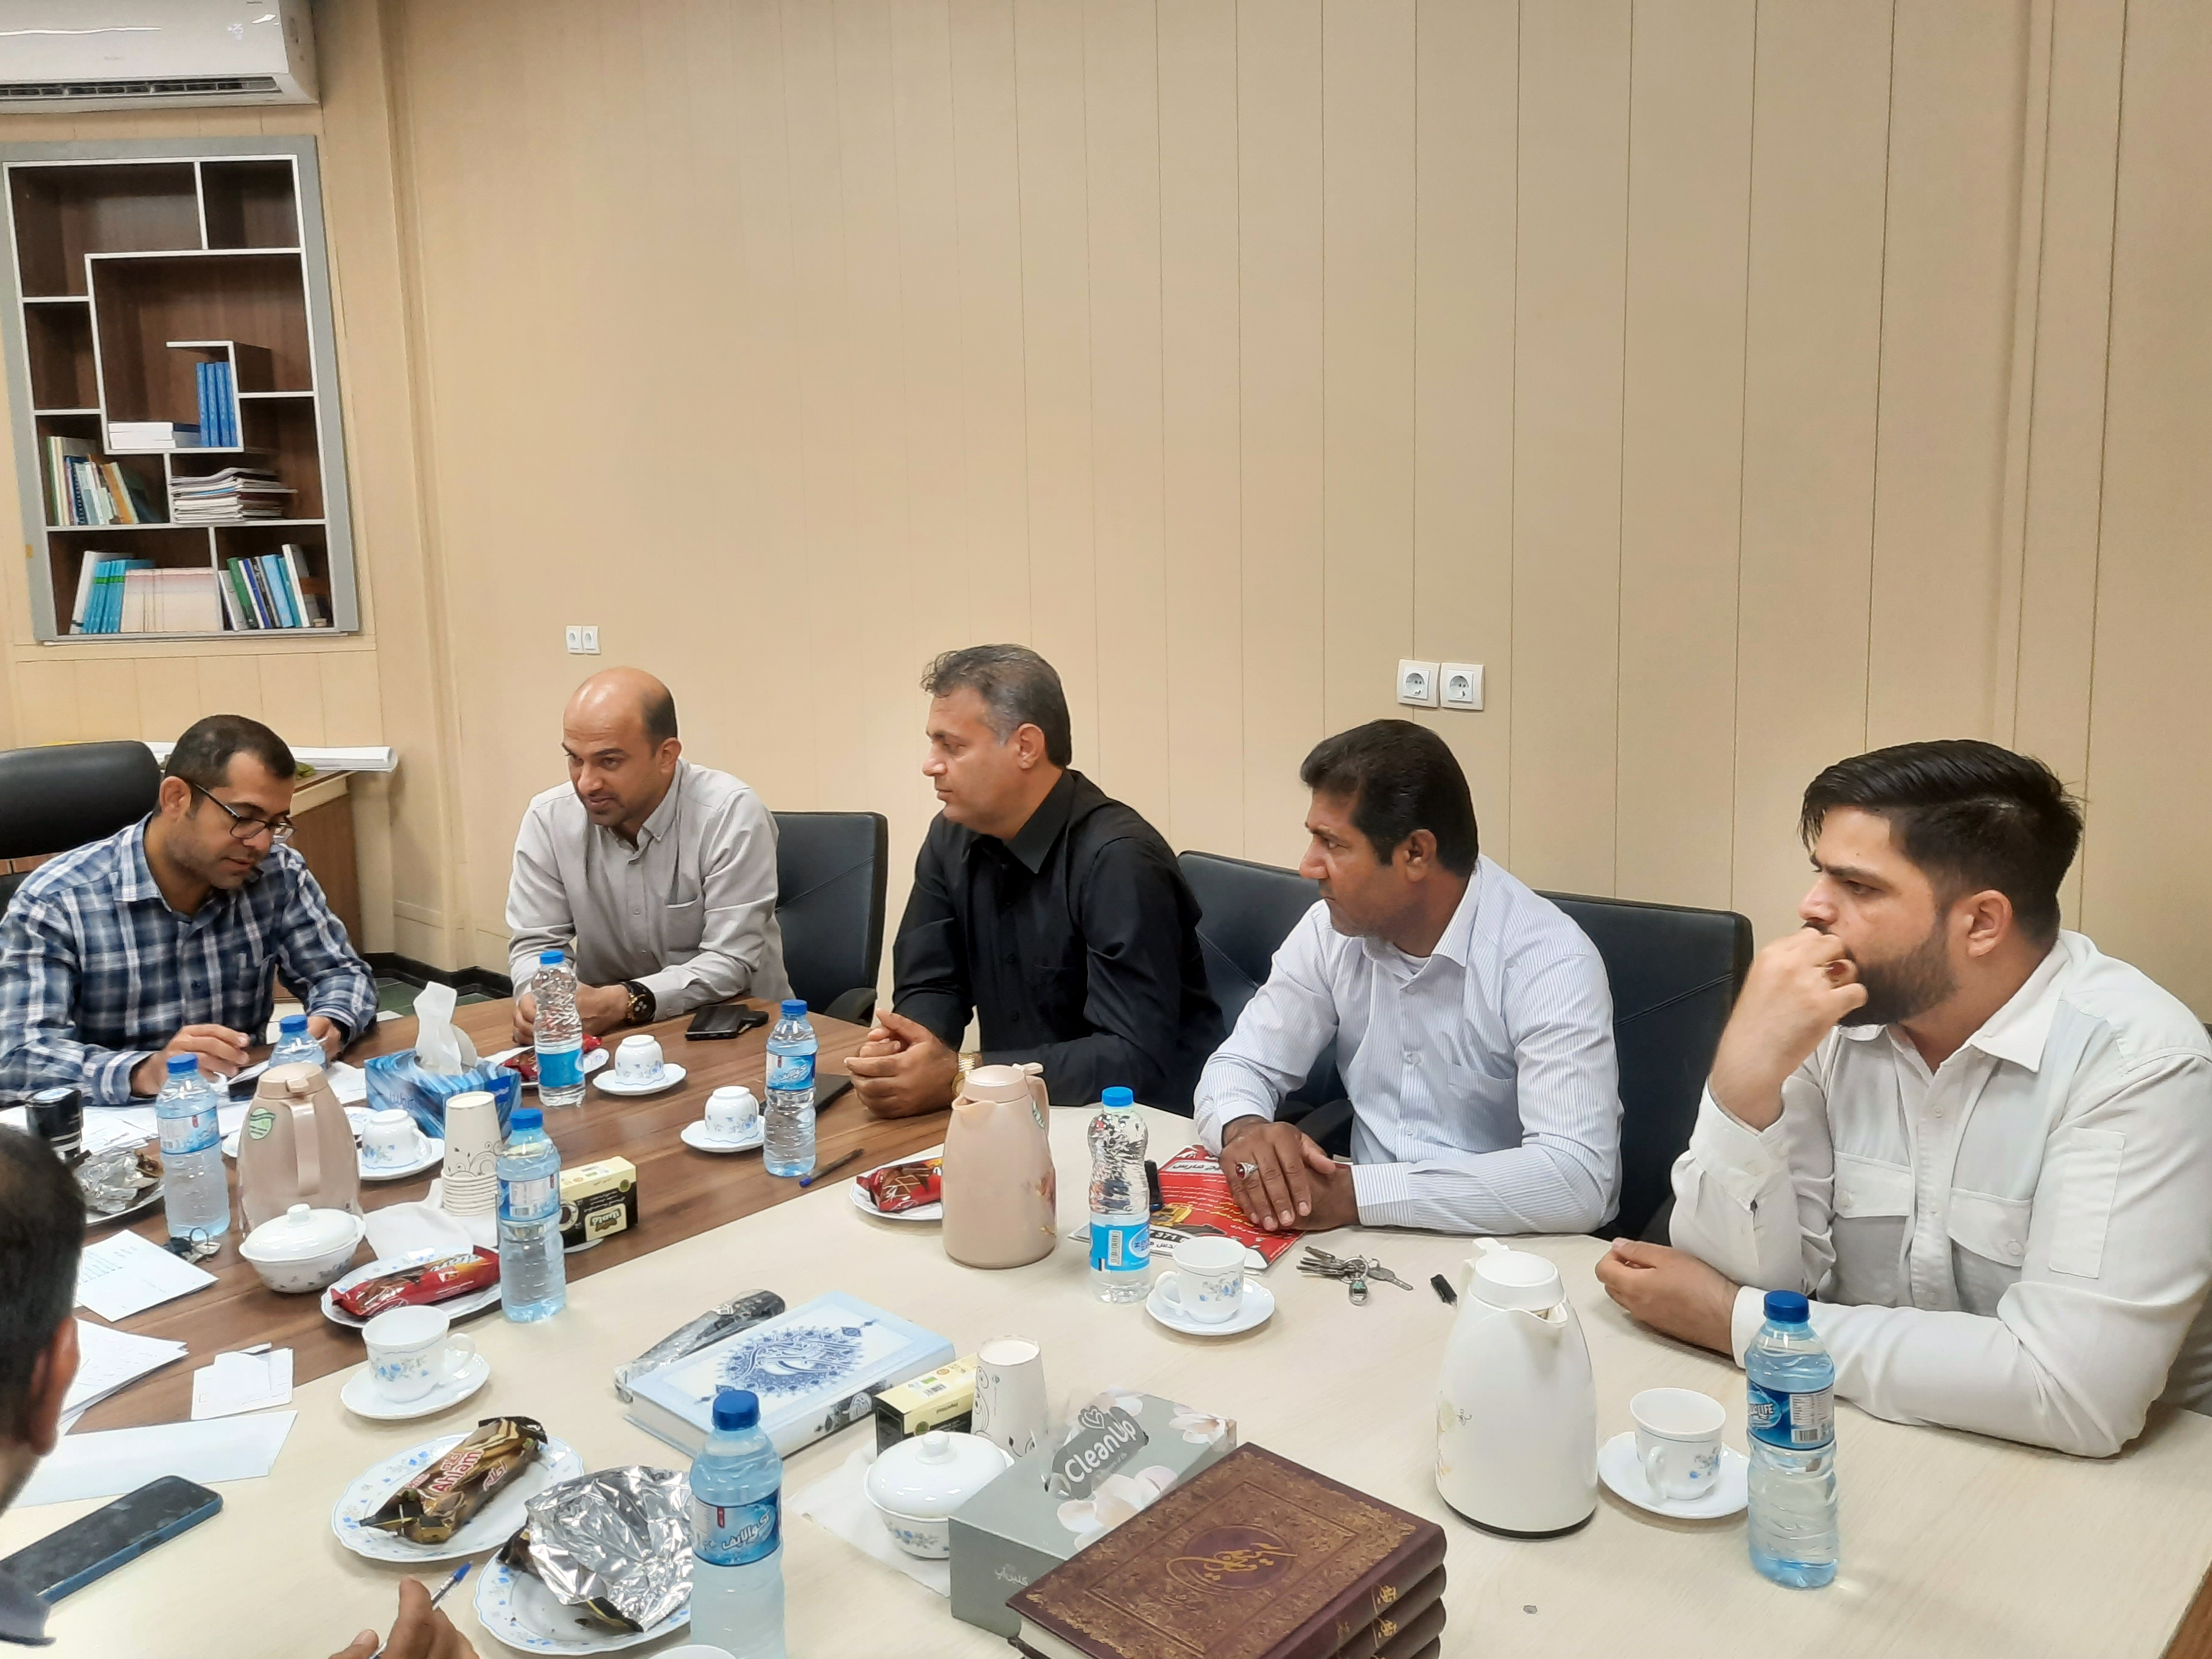 ابراهیم بهمنی به عنوان اولین رئیس شورای شهر شیرینو انتخاب شد